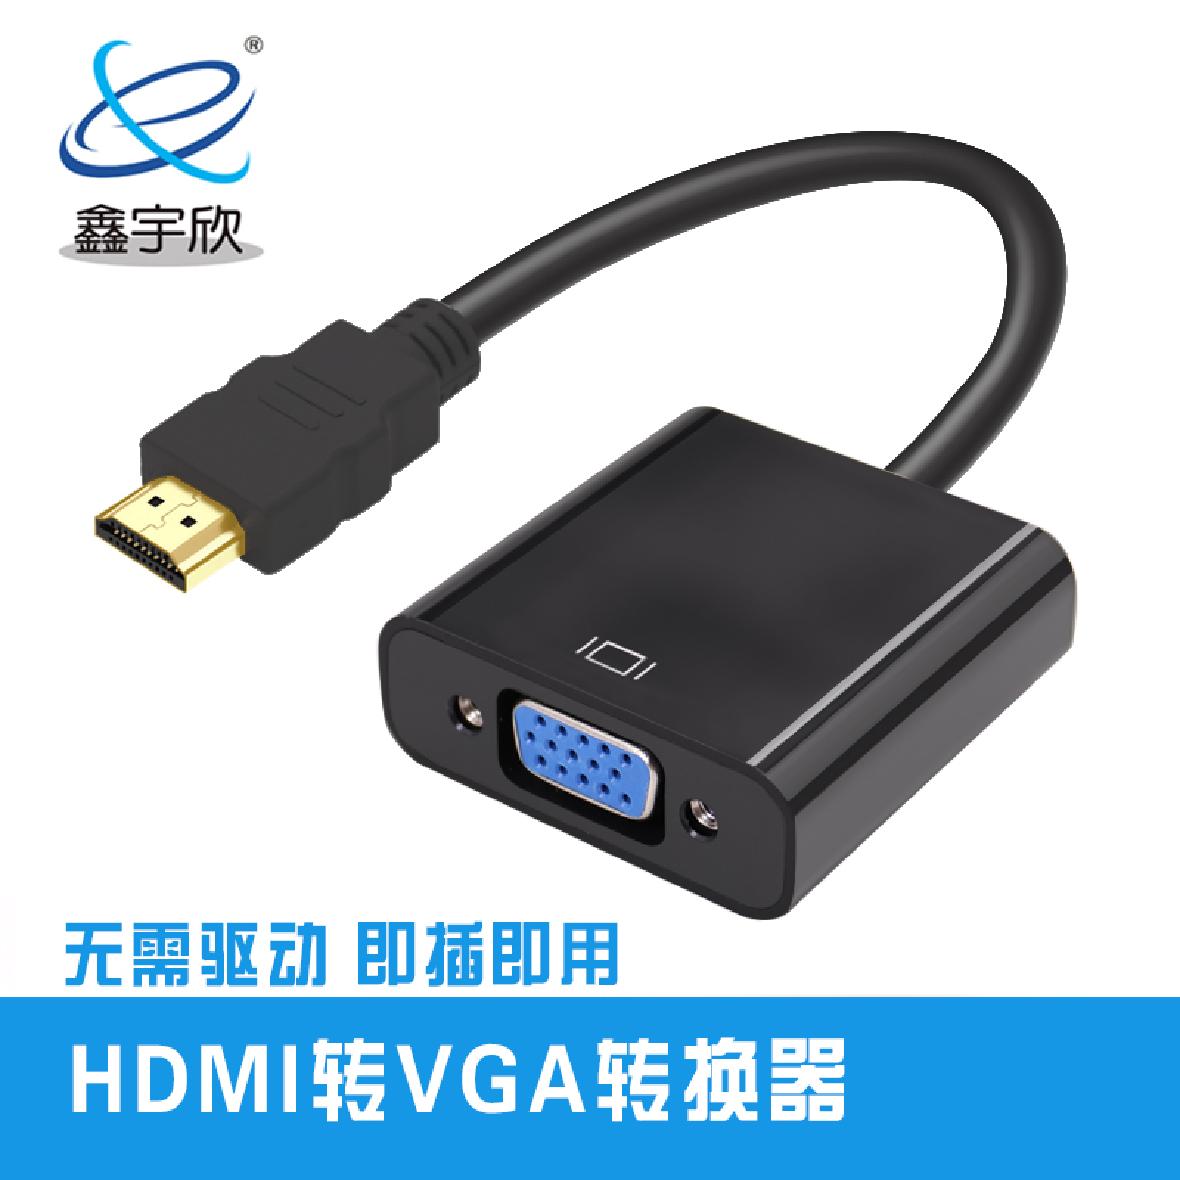  HDMI转VGA转换器即插即用无需驱动